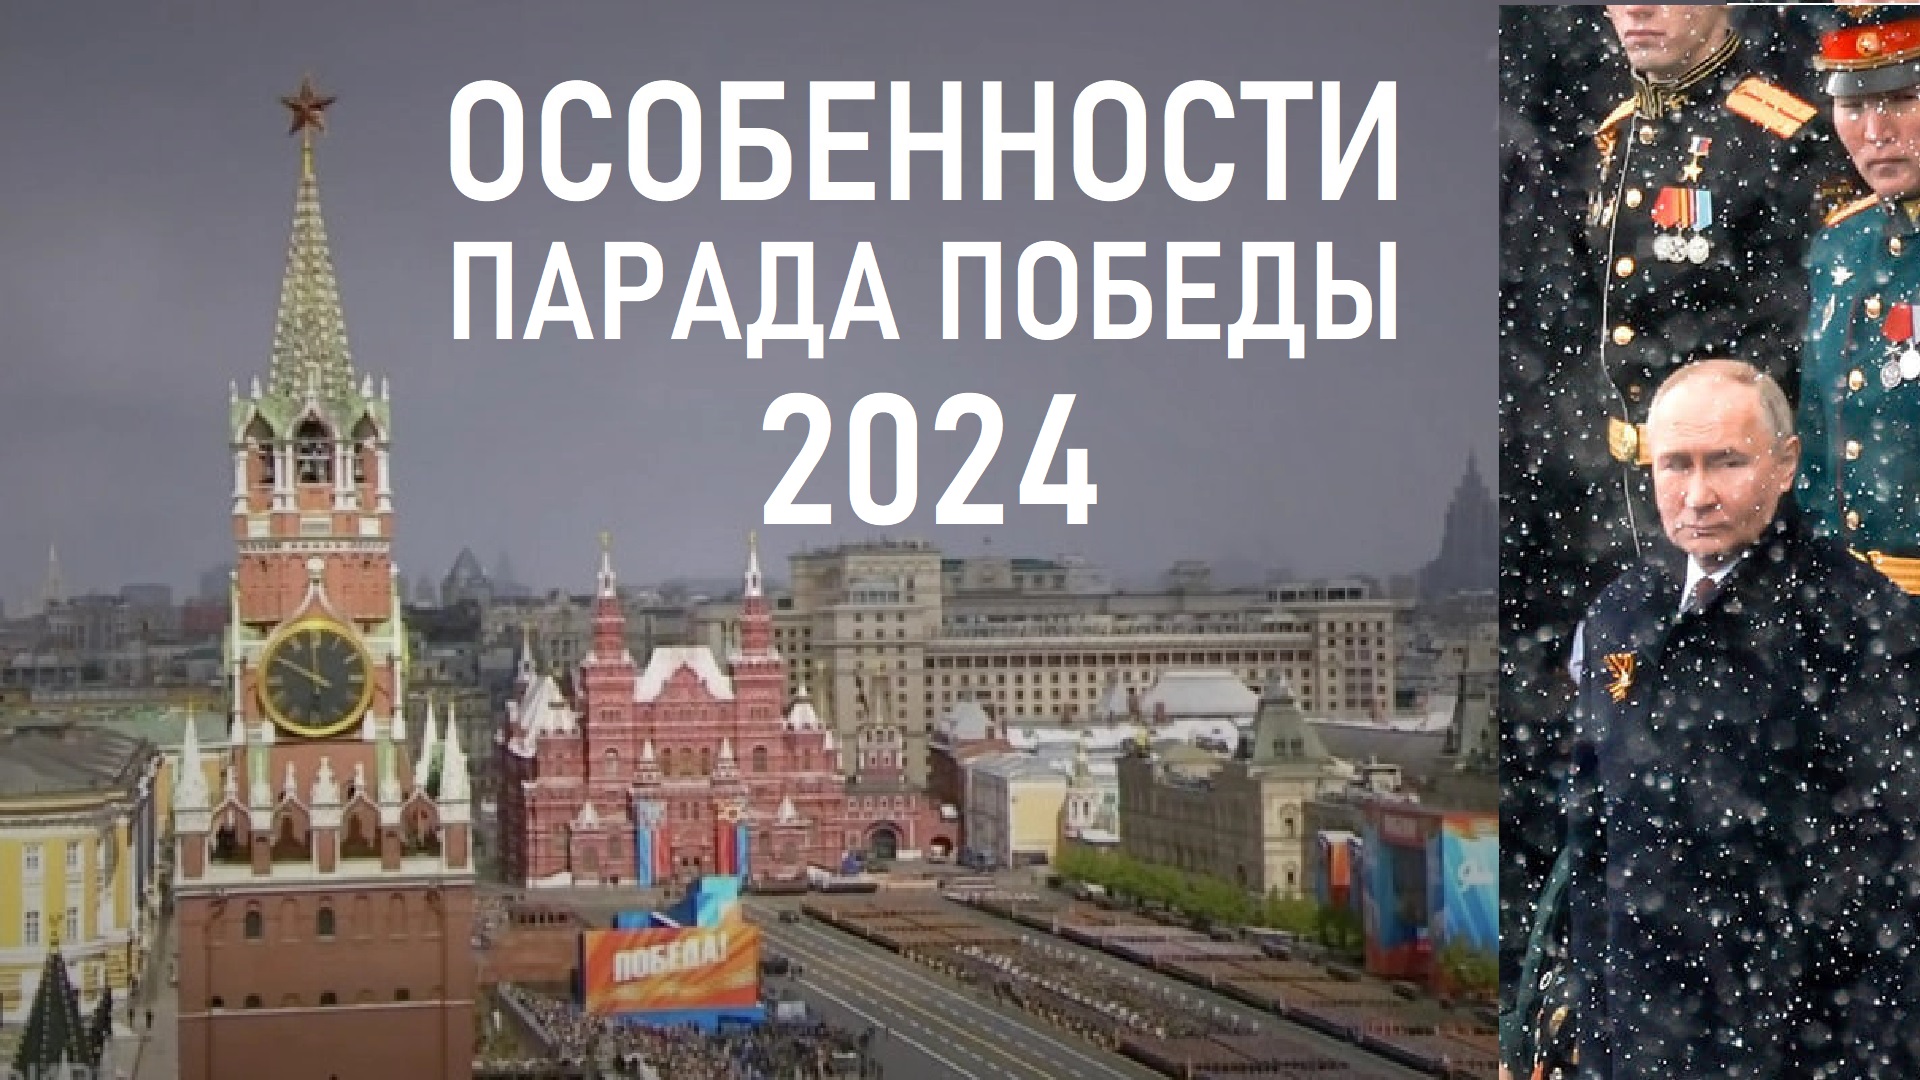 Особенности Парада Победы 2024 года 9 мая на Красной площади в Москве! Лента новостей 09.05.2024